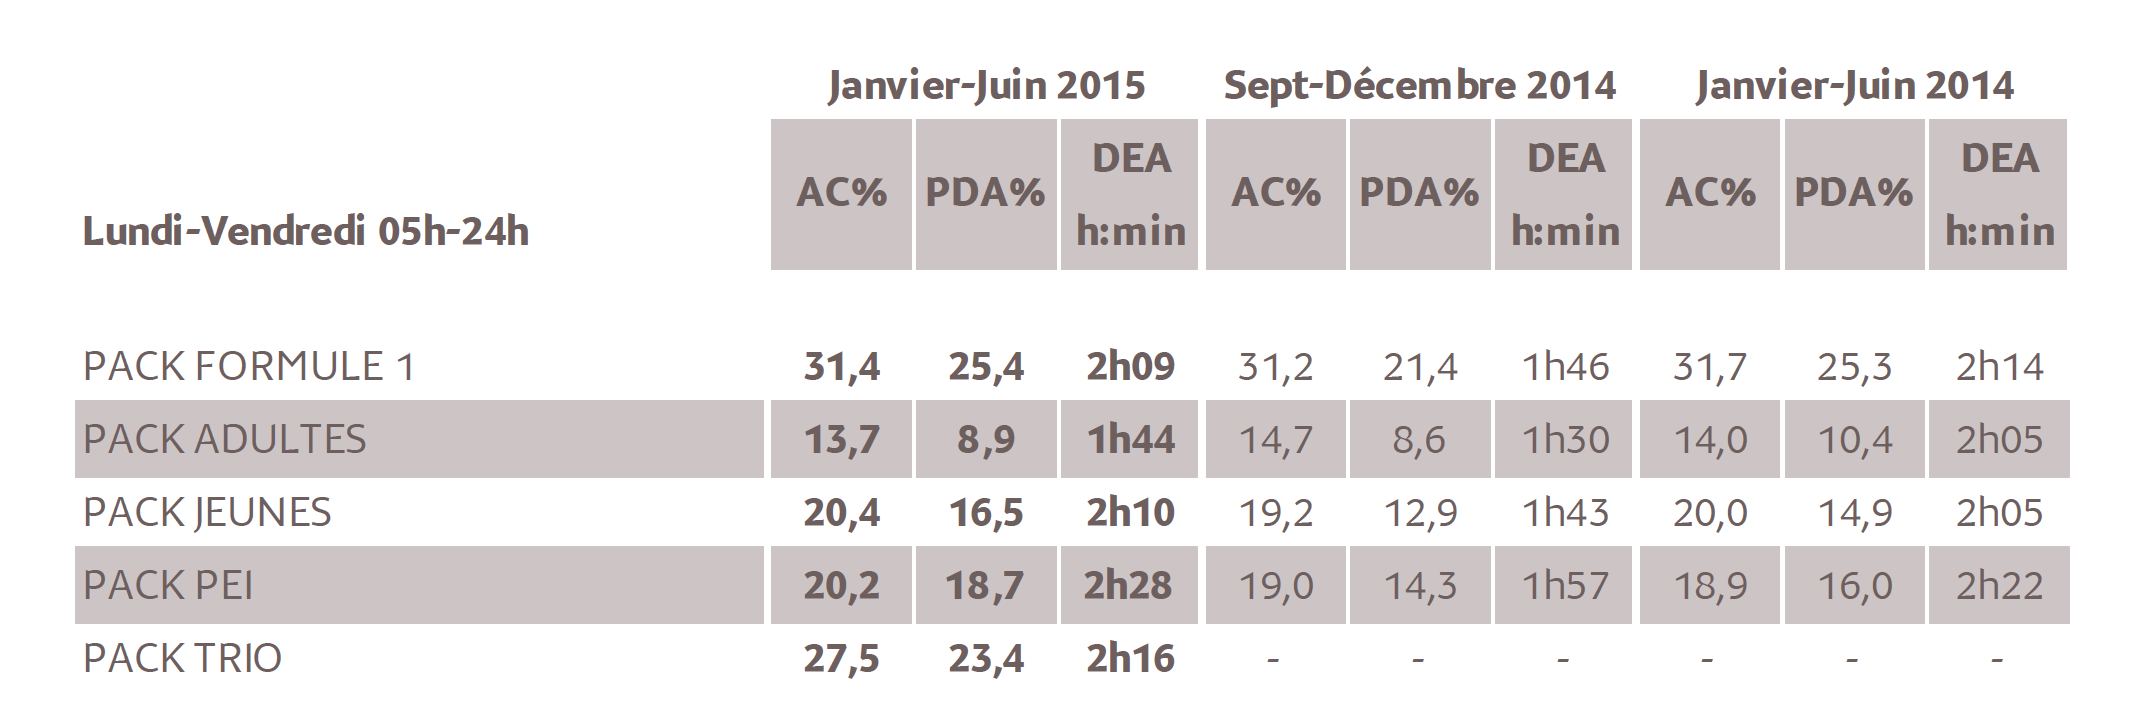 Source : Médiamétrie – Métridom – Janvier-Juin 2015 - 13 ans et plus - Copyright Médiamétrie - Tous droits réservés